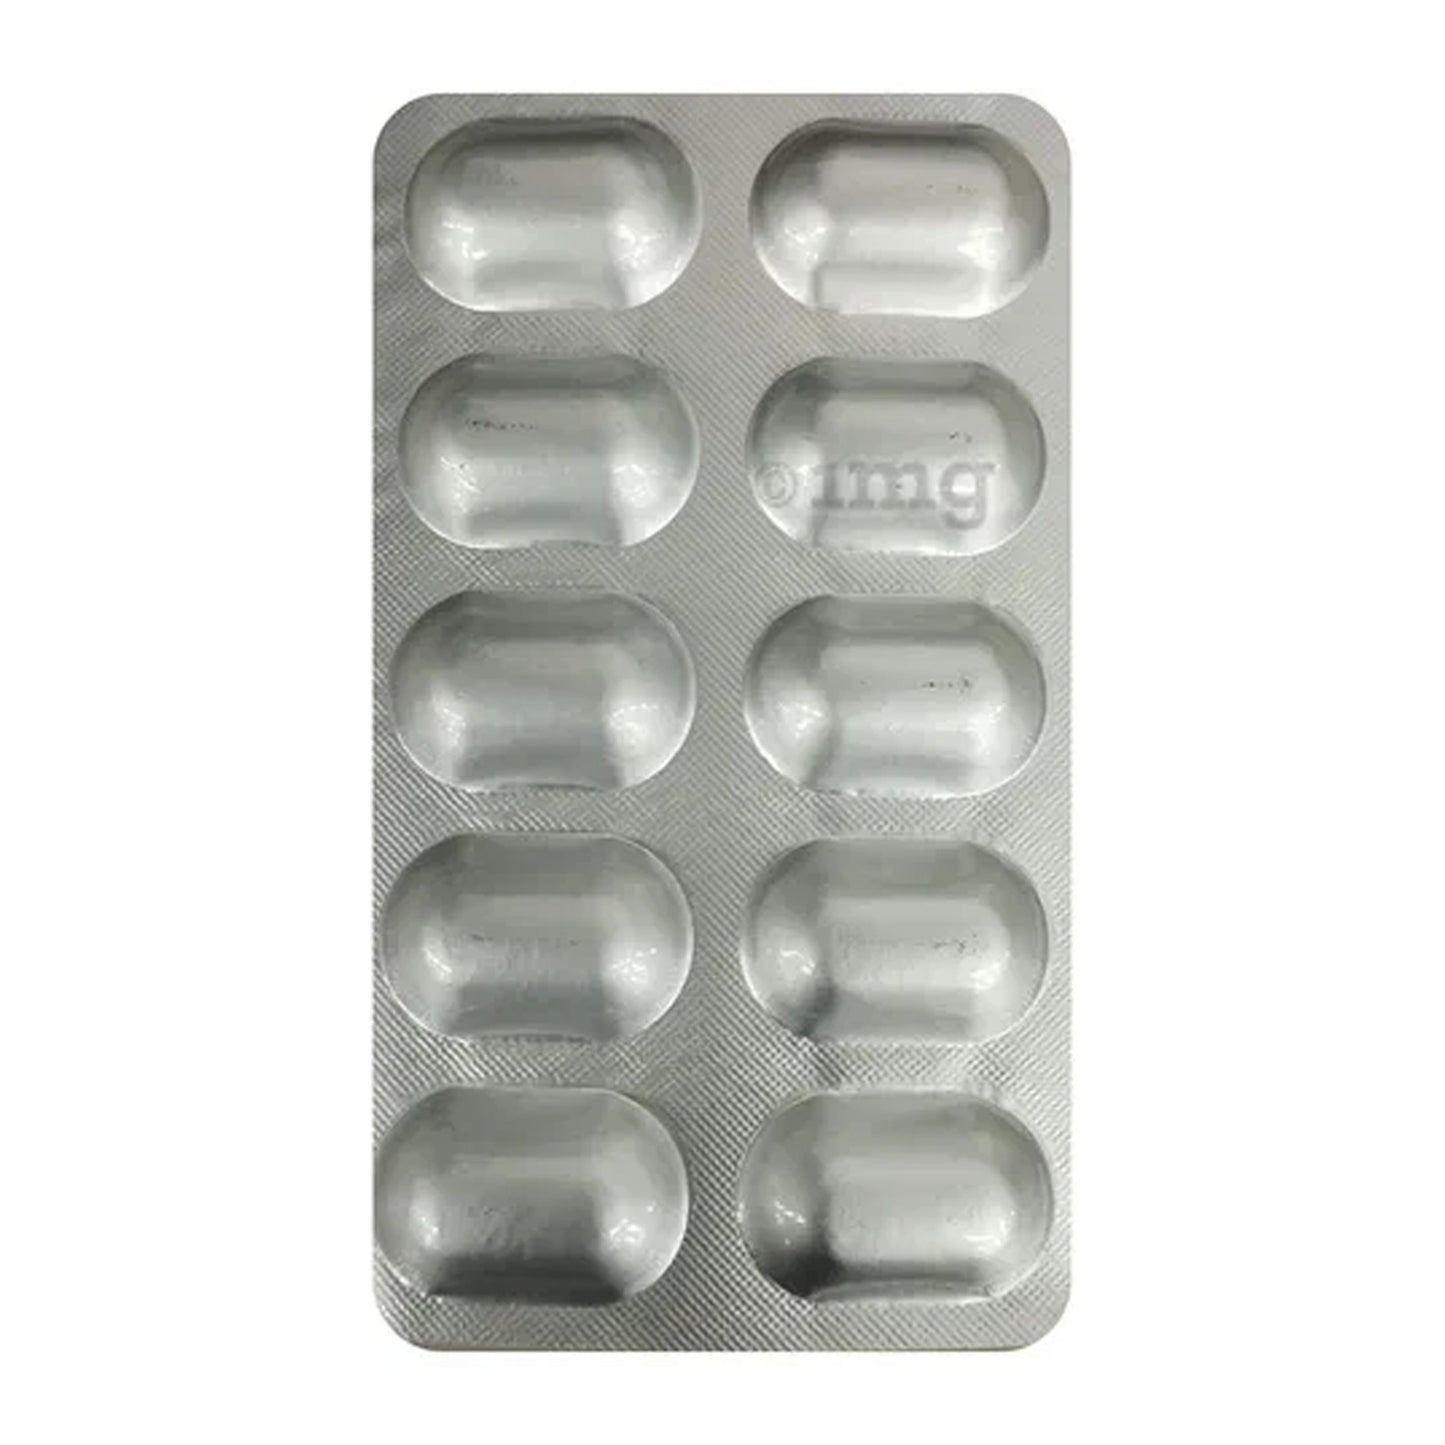 Cobaforte CD3 XL, 10 Tablets